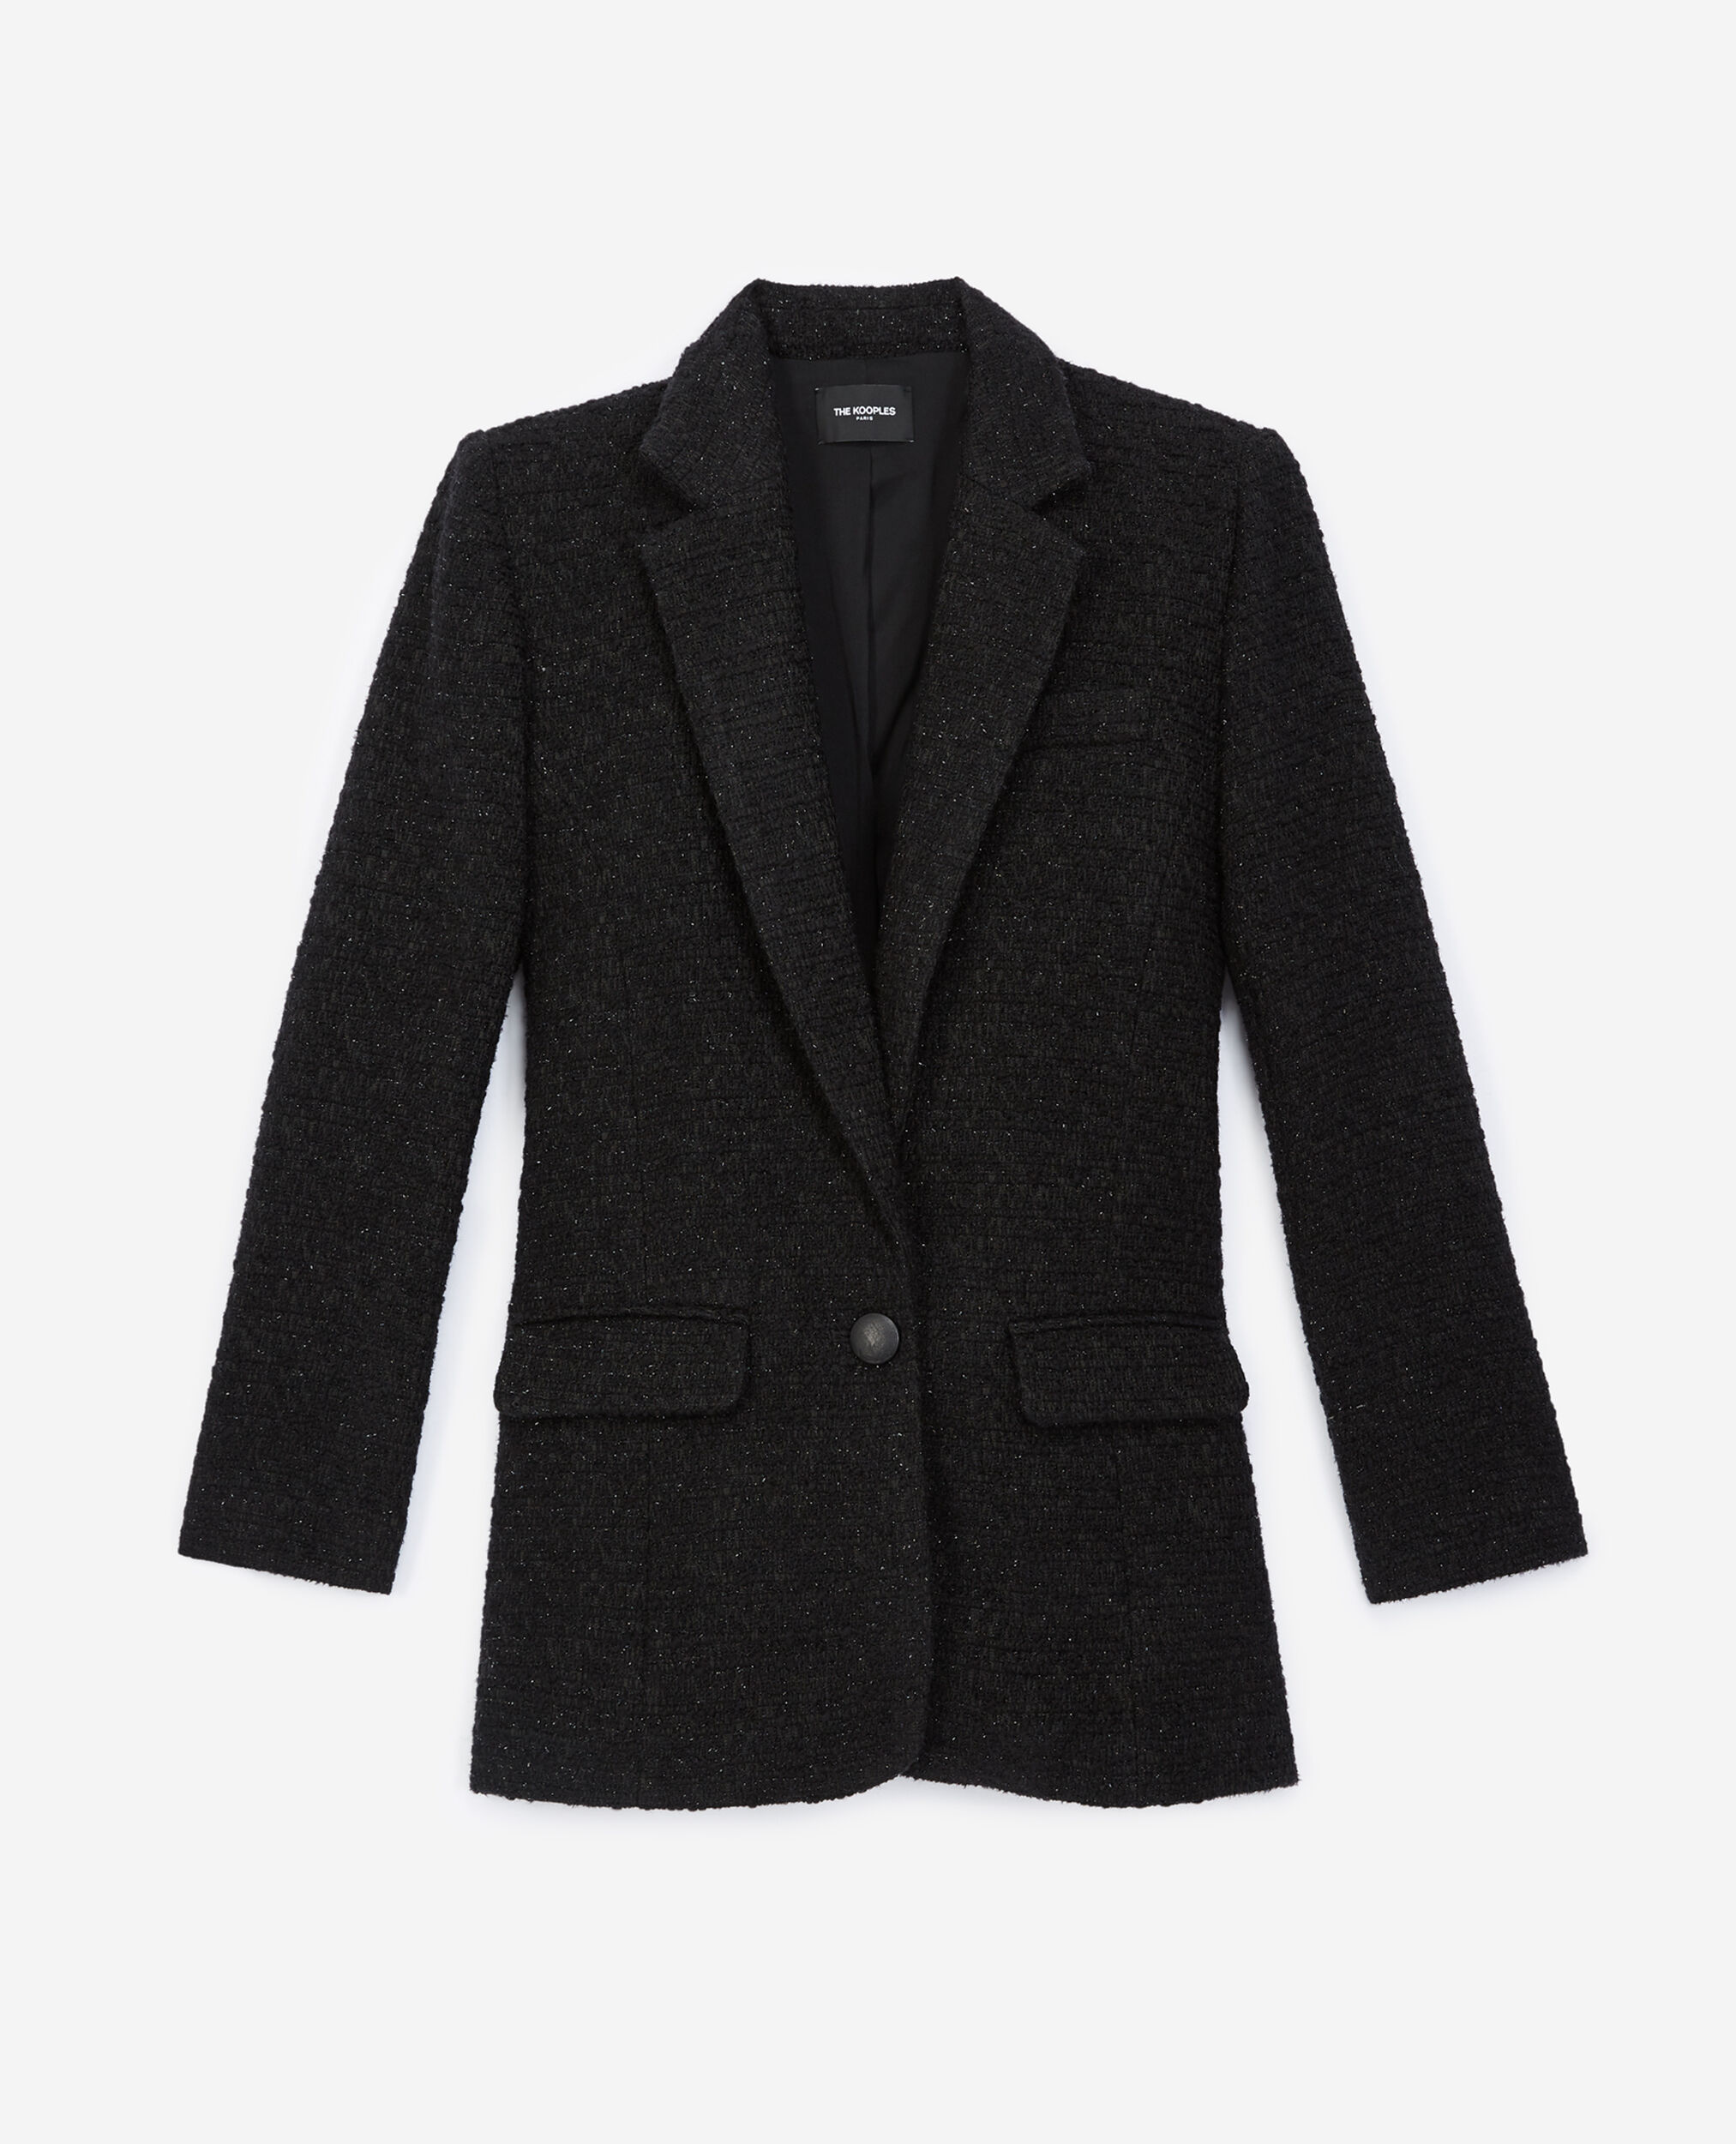 Schwarzer Tweed-Blazer mit Knopfverschluss, BLACK, hi-res image number null